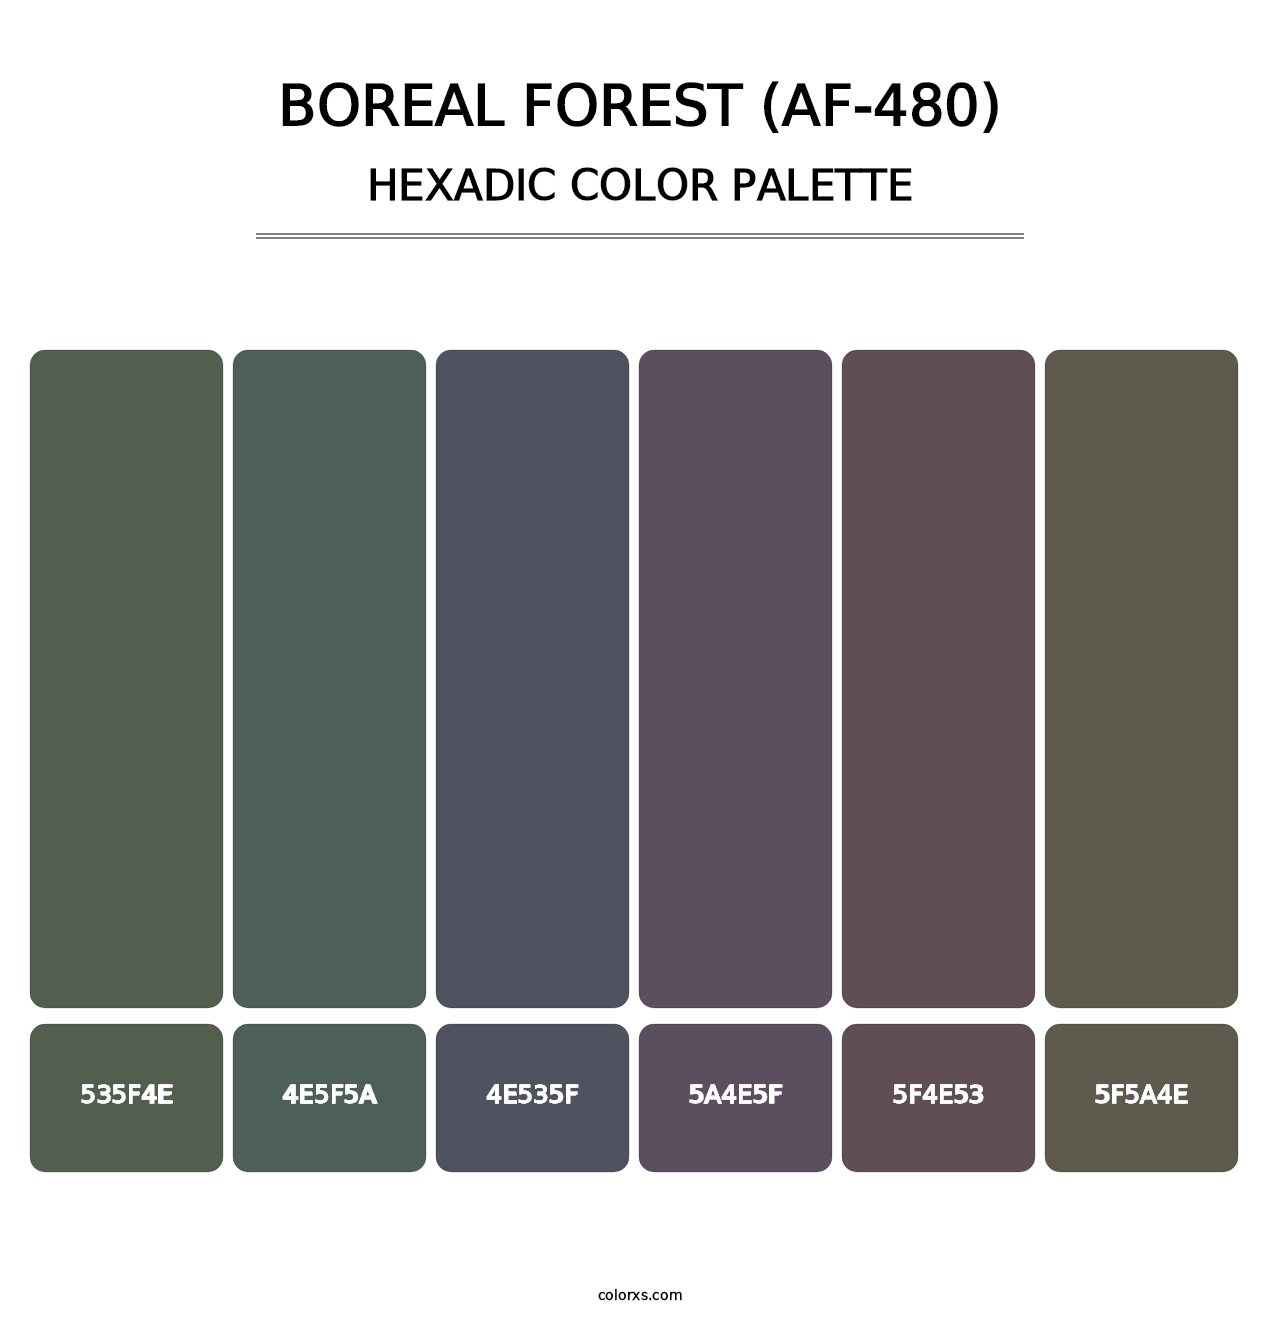 Boreal Forest (AF-480) - Hexadic Color Palette